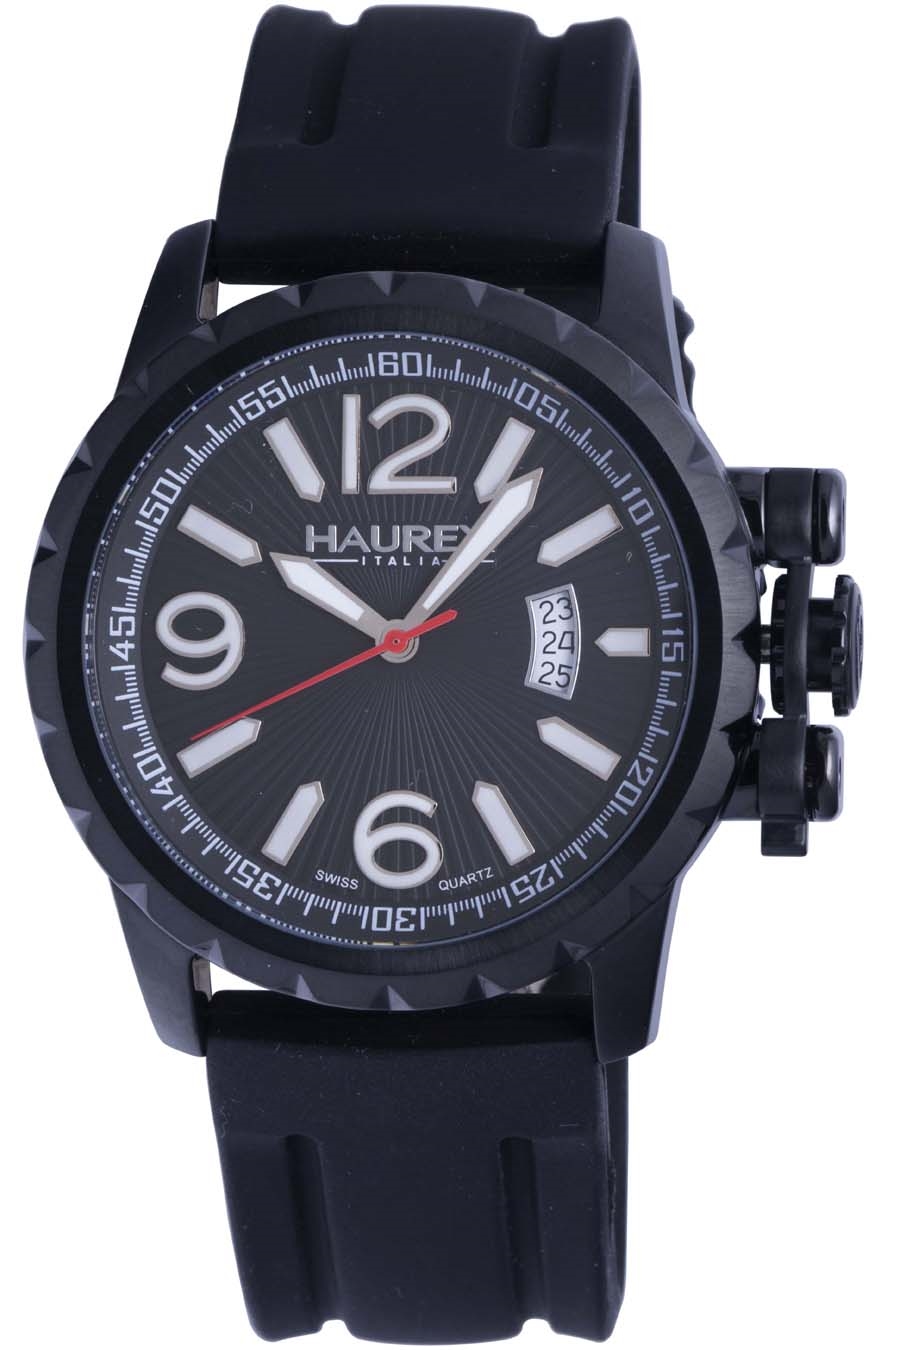 Haurex Watches – Gevril